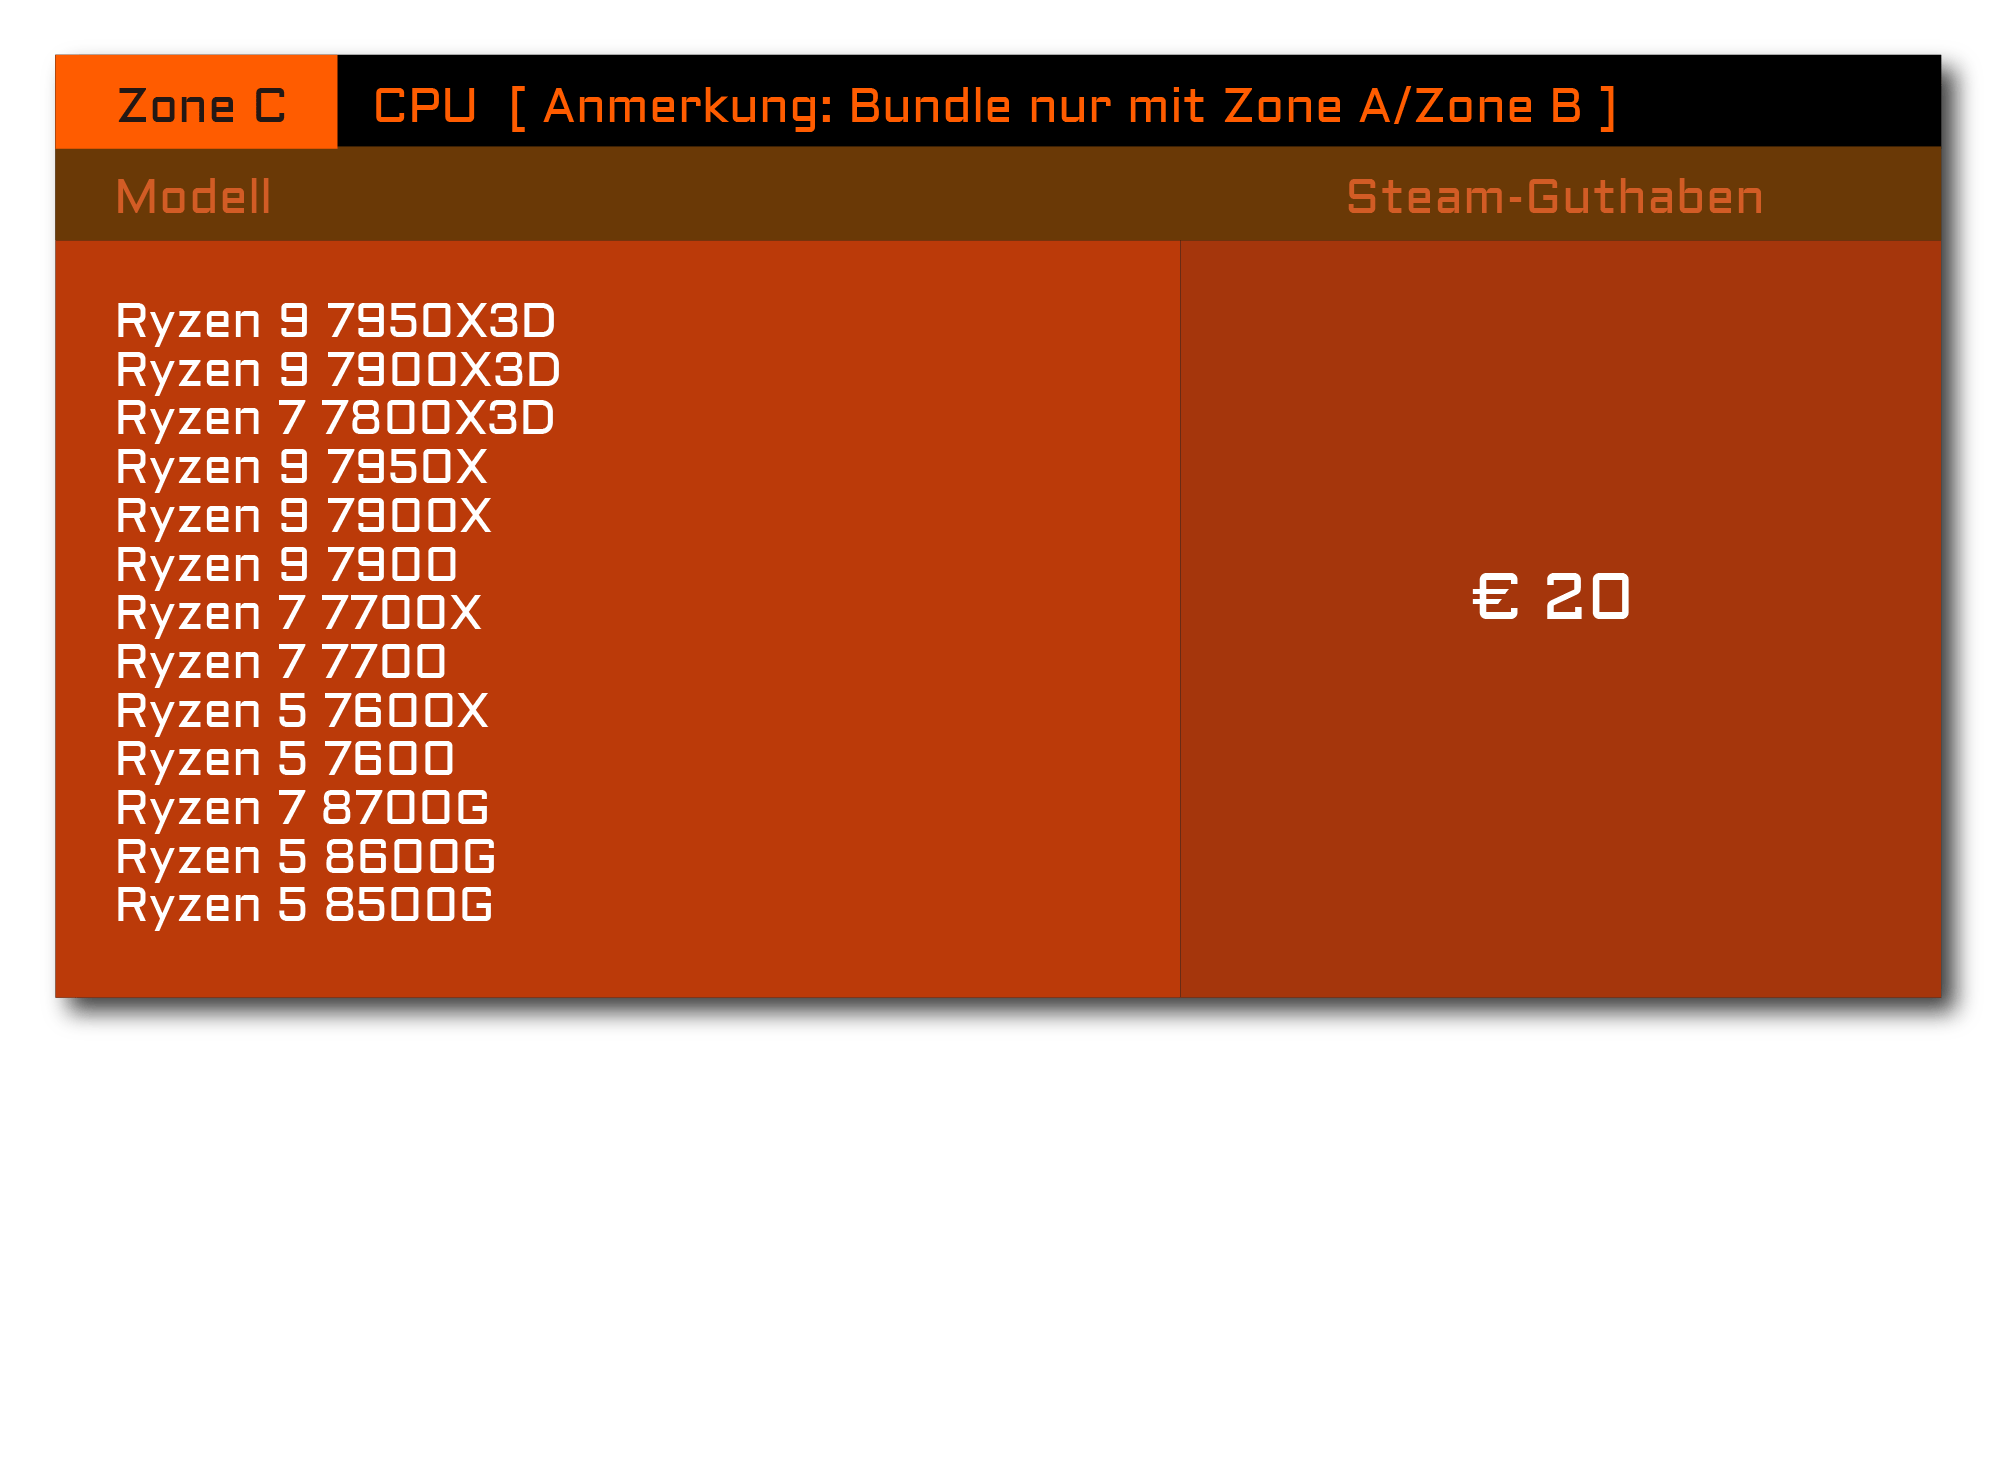 Bundle Produktliste - Zone C - CPU - Anmerkung: Bundle nur mit Zone A/Zone B